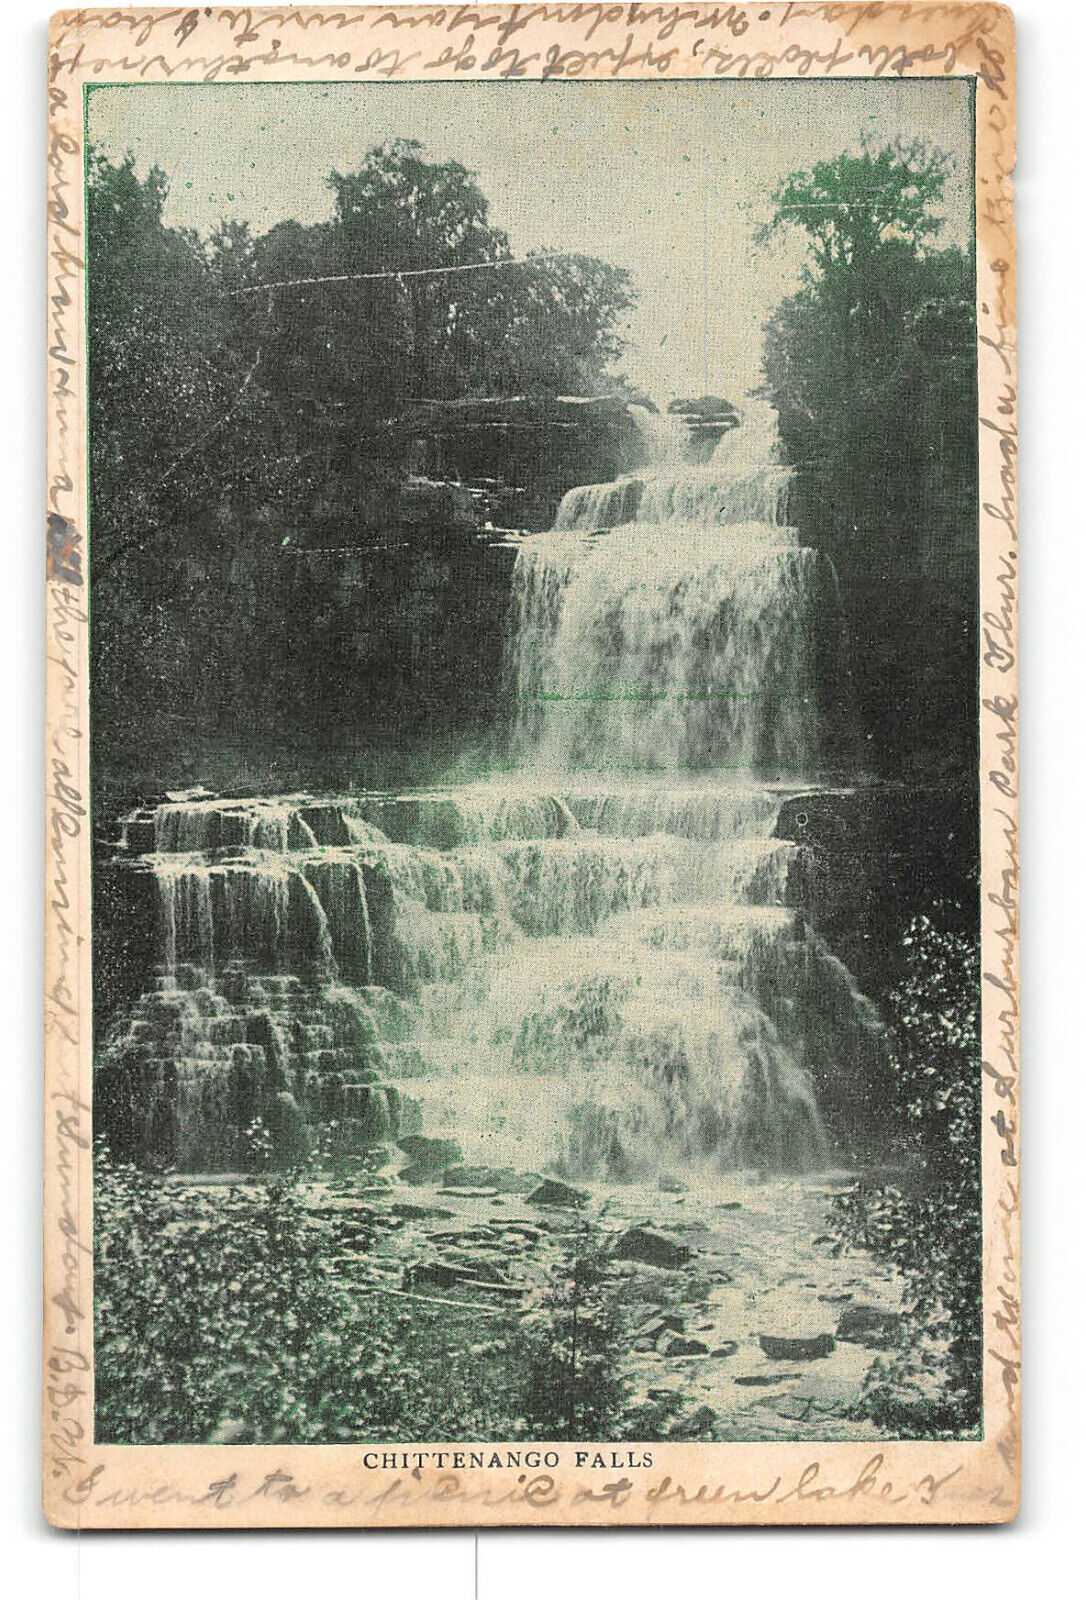 Cazenovia New York NY Postcard 1907 Chittenango Falls